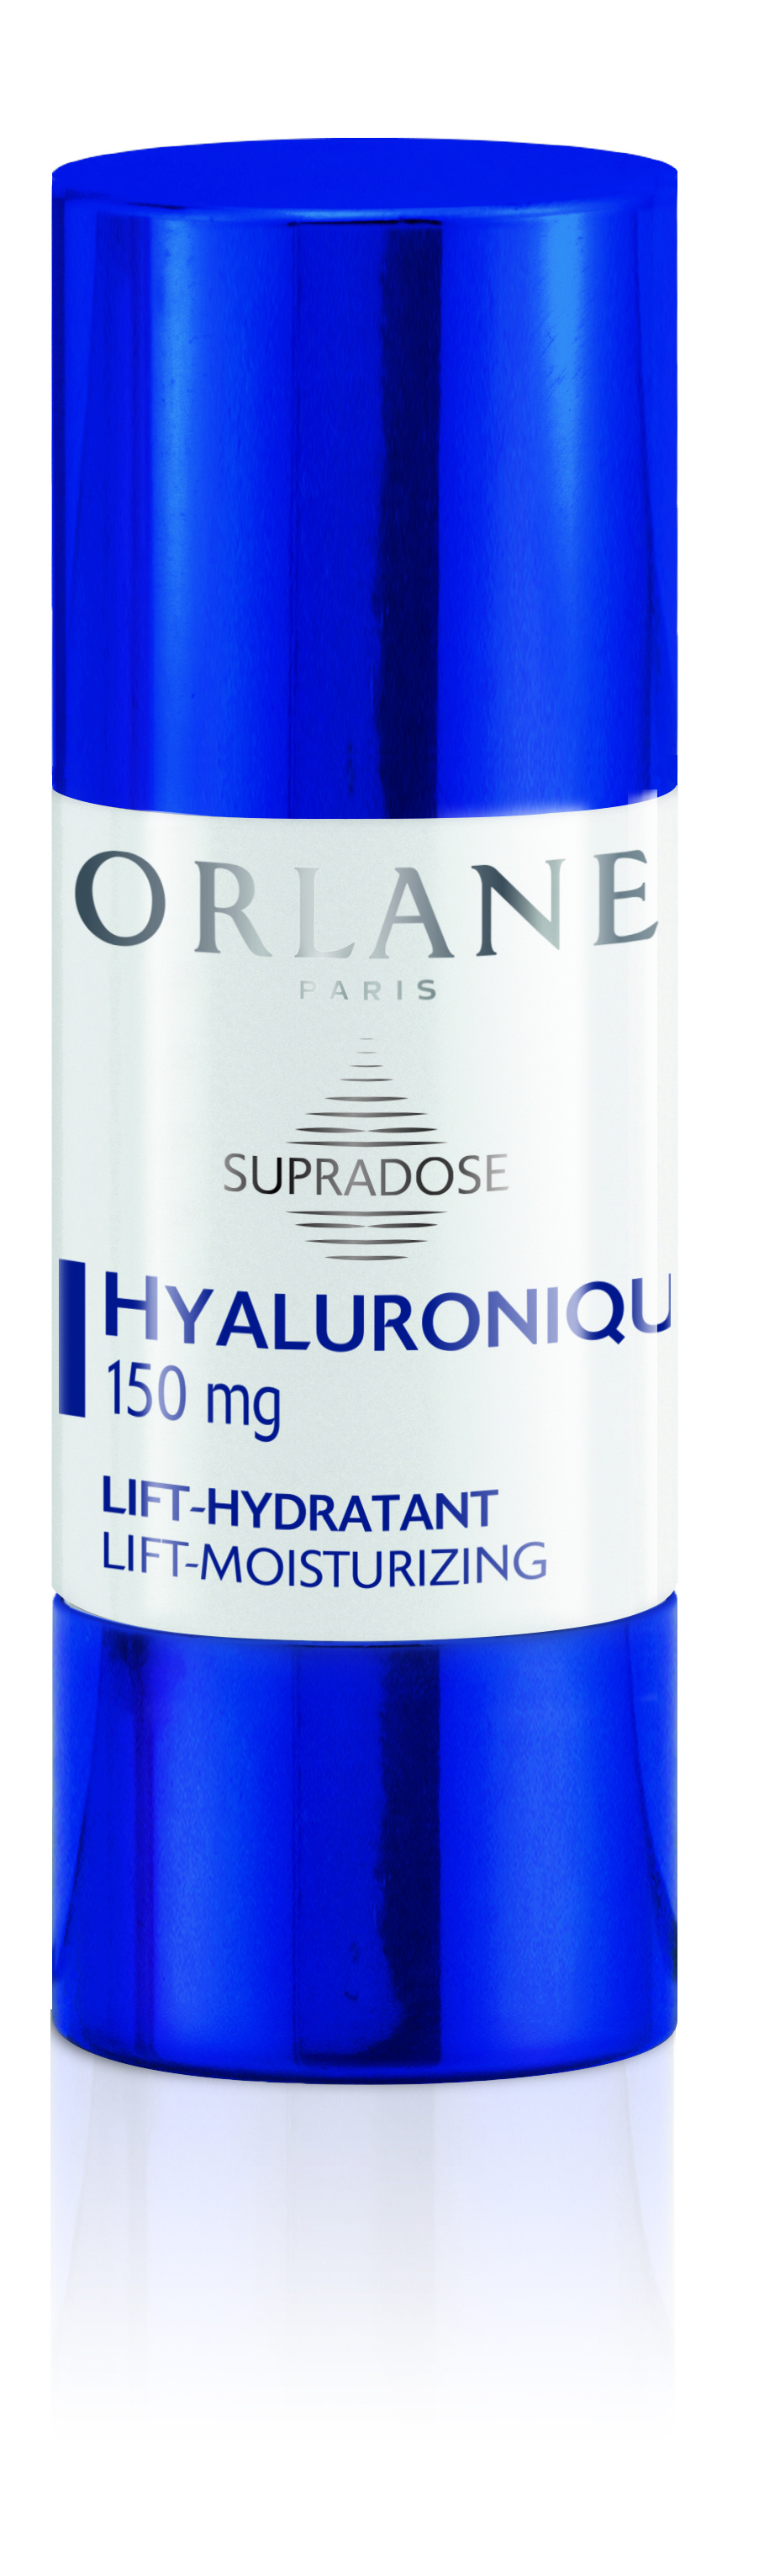 Orlane Supradose Hyaluronic Acid